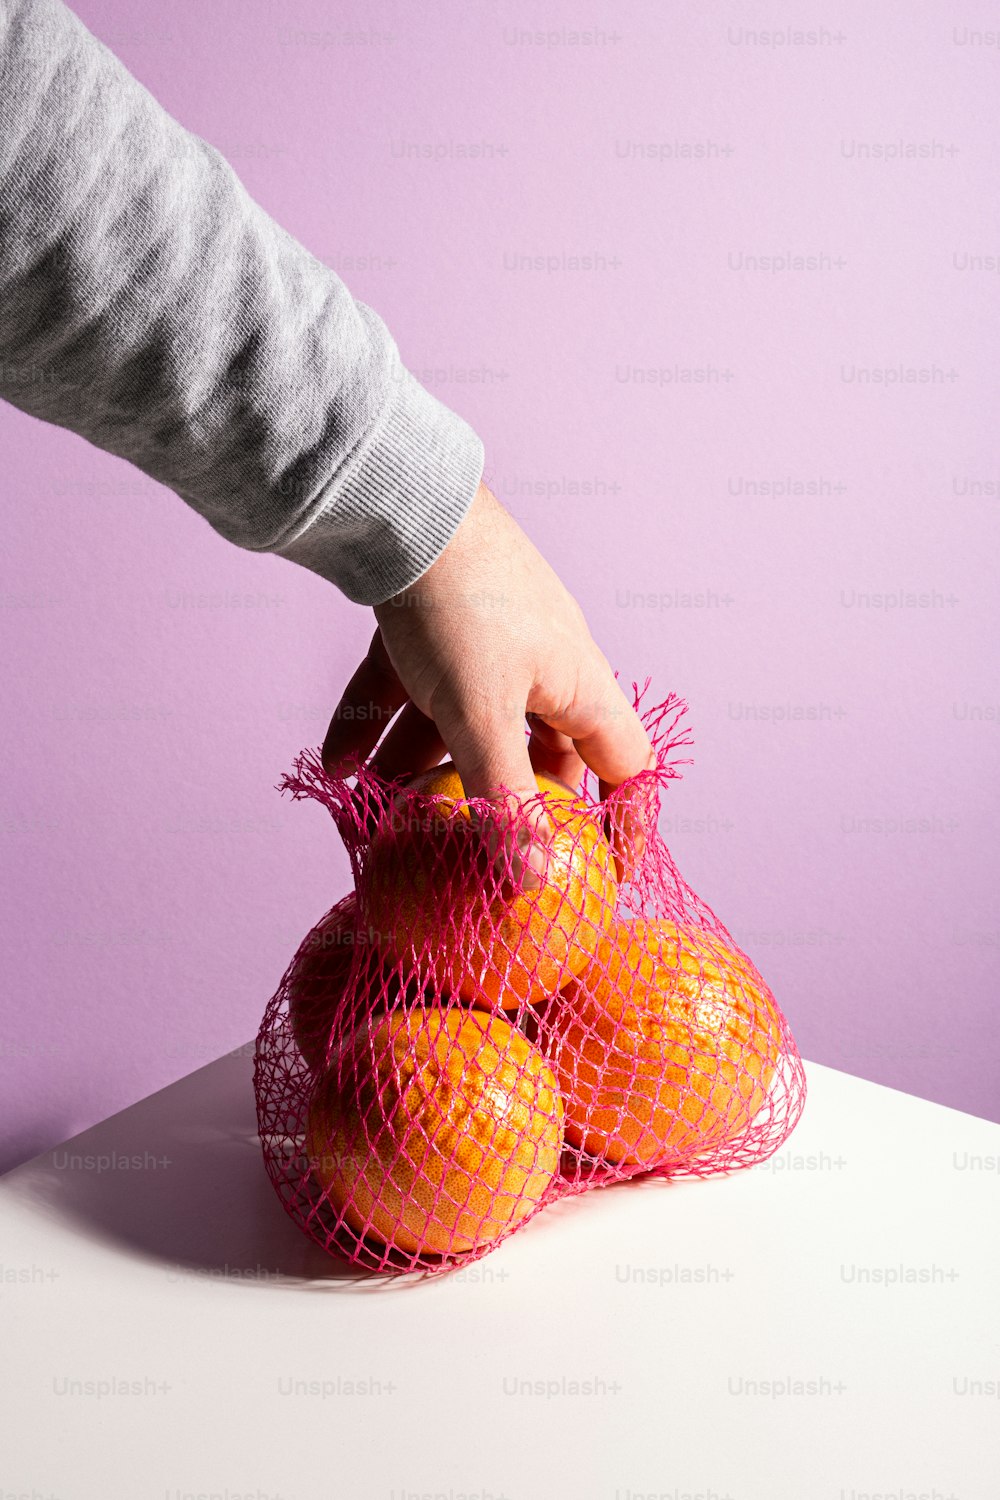 une personne tenant un sac d’oranges sur une table